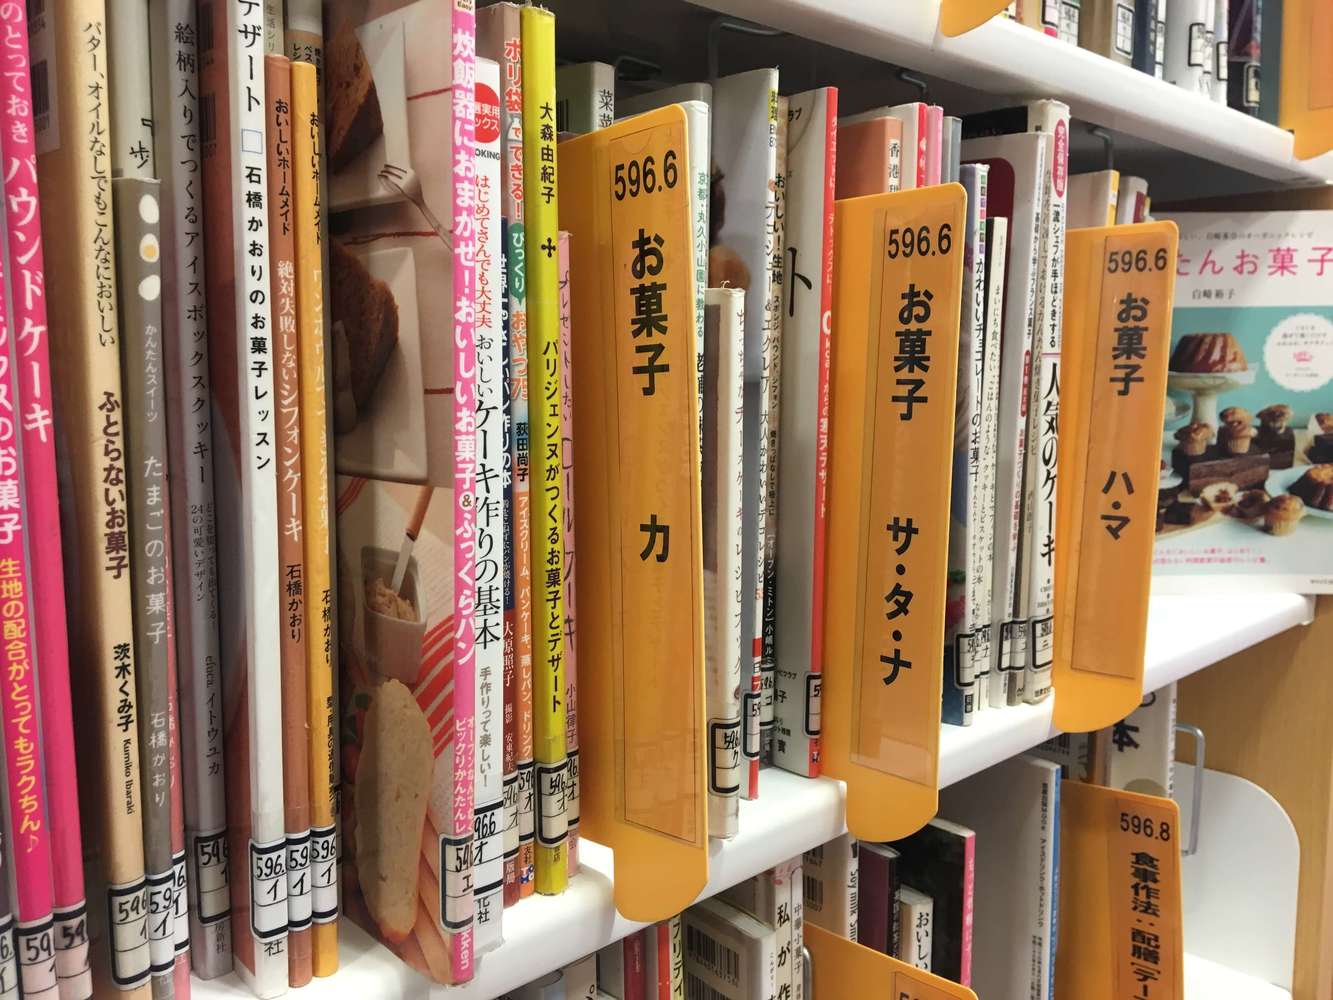 日本女子大学附属中学校　図書館司書インタビュー「生徒それぞれが意味を持って図書室に価値を見出してくれるように整えていければなと思っています」39